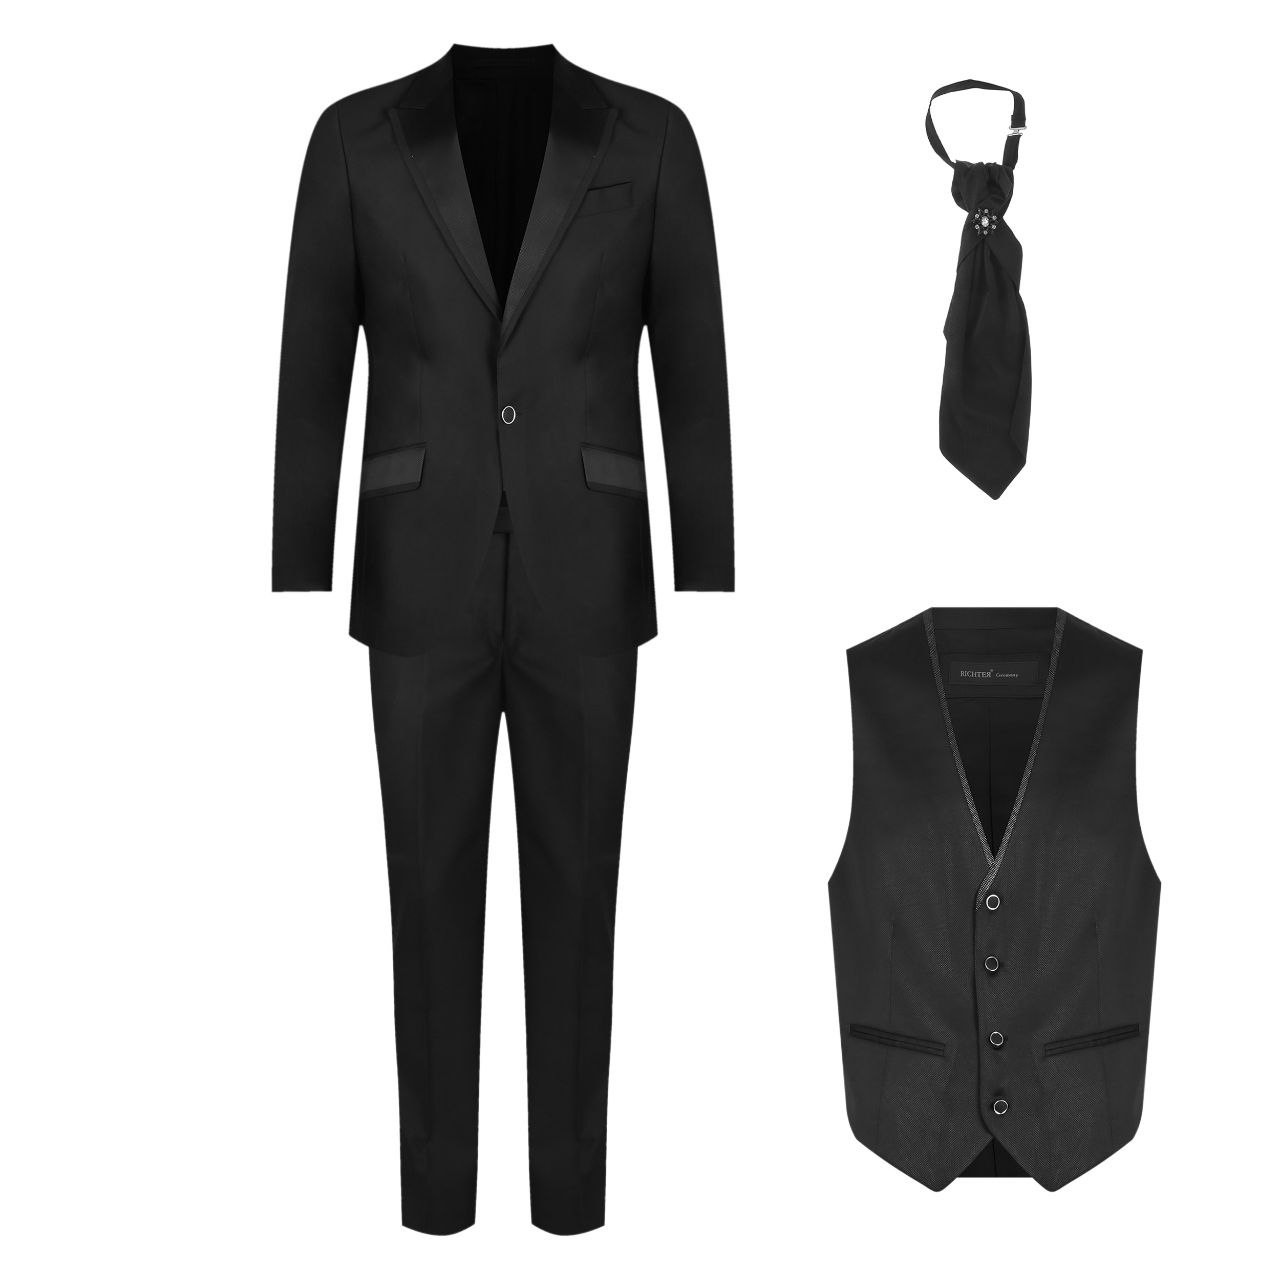 ست کت و شلوار و جلیقه مردانه مدل ریجتر به همراه کراوات